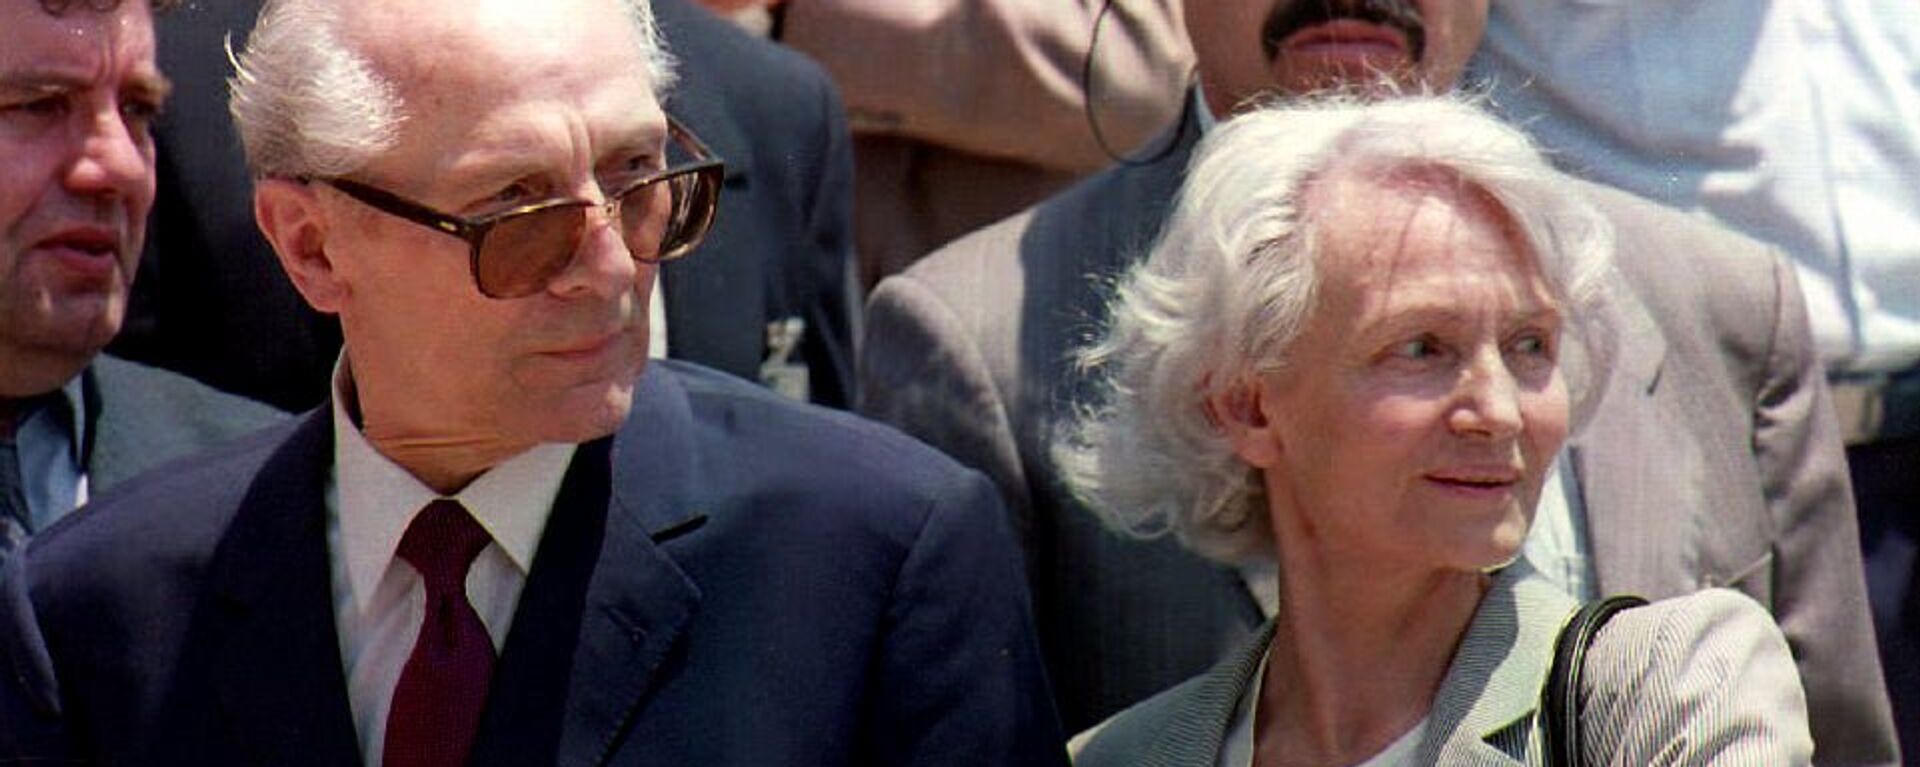 Erich Honecker, último líder de la República Democrática de Alemania, y su esposa, Margot Honecker (archivo) - Sputnik Mundo, 1920, 06.05.2016